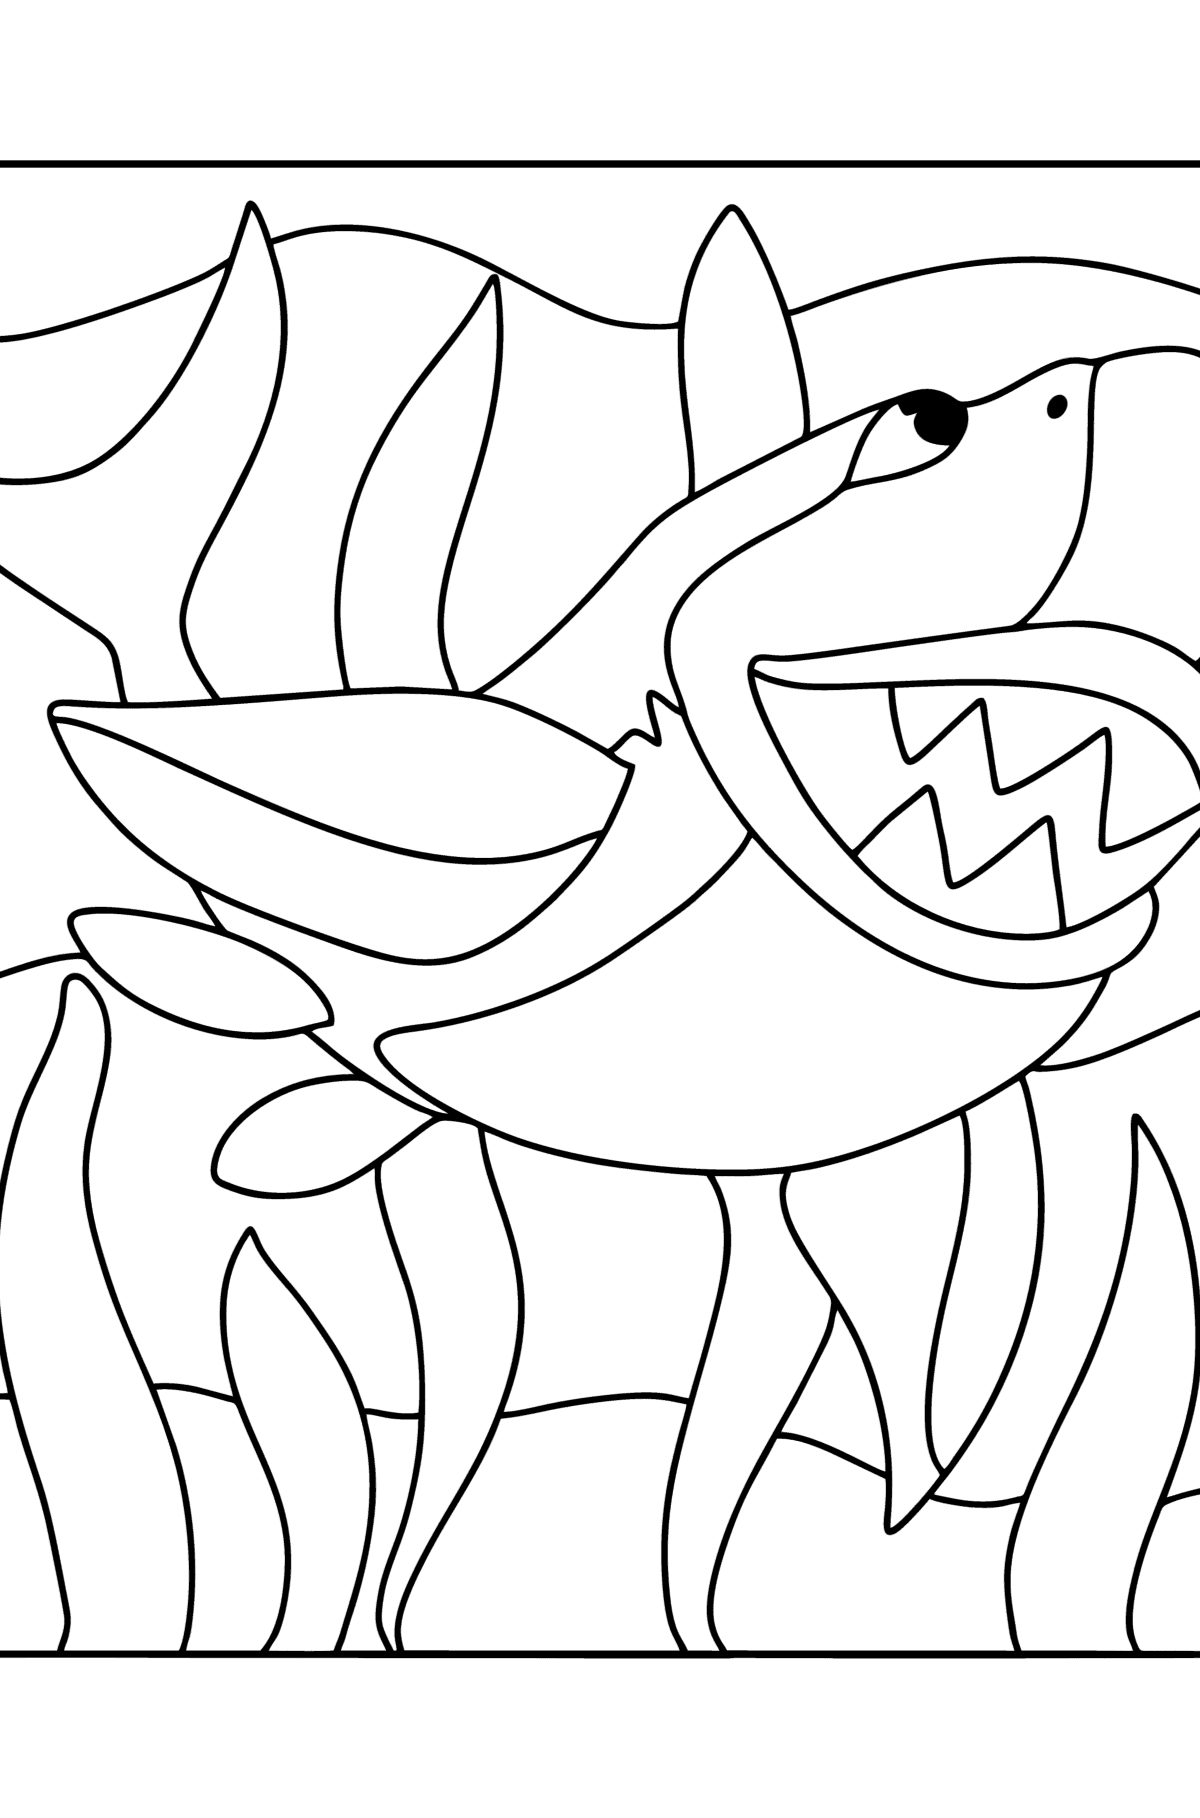 Dibujo de Tiburón para colorear - Dibujos para Colorear para Niños